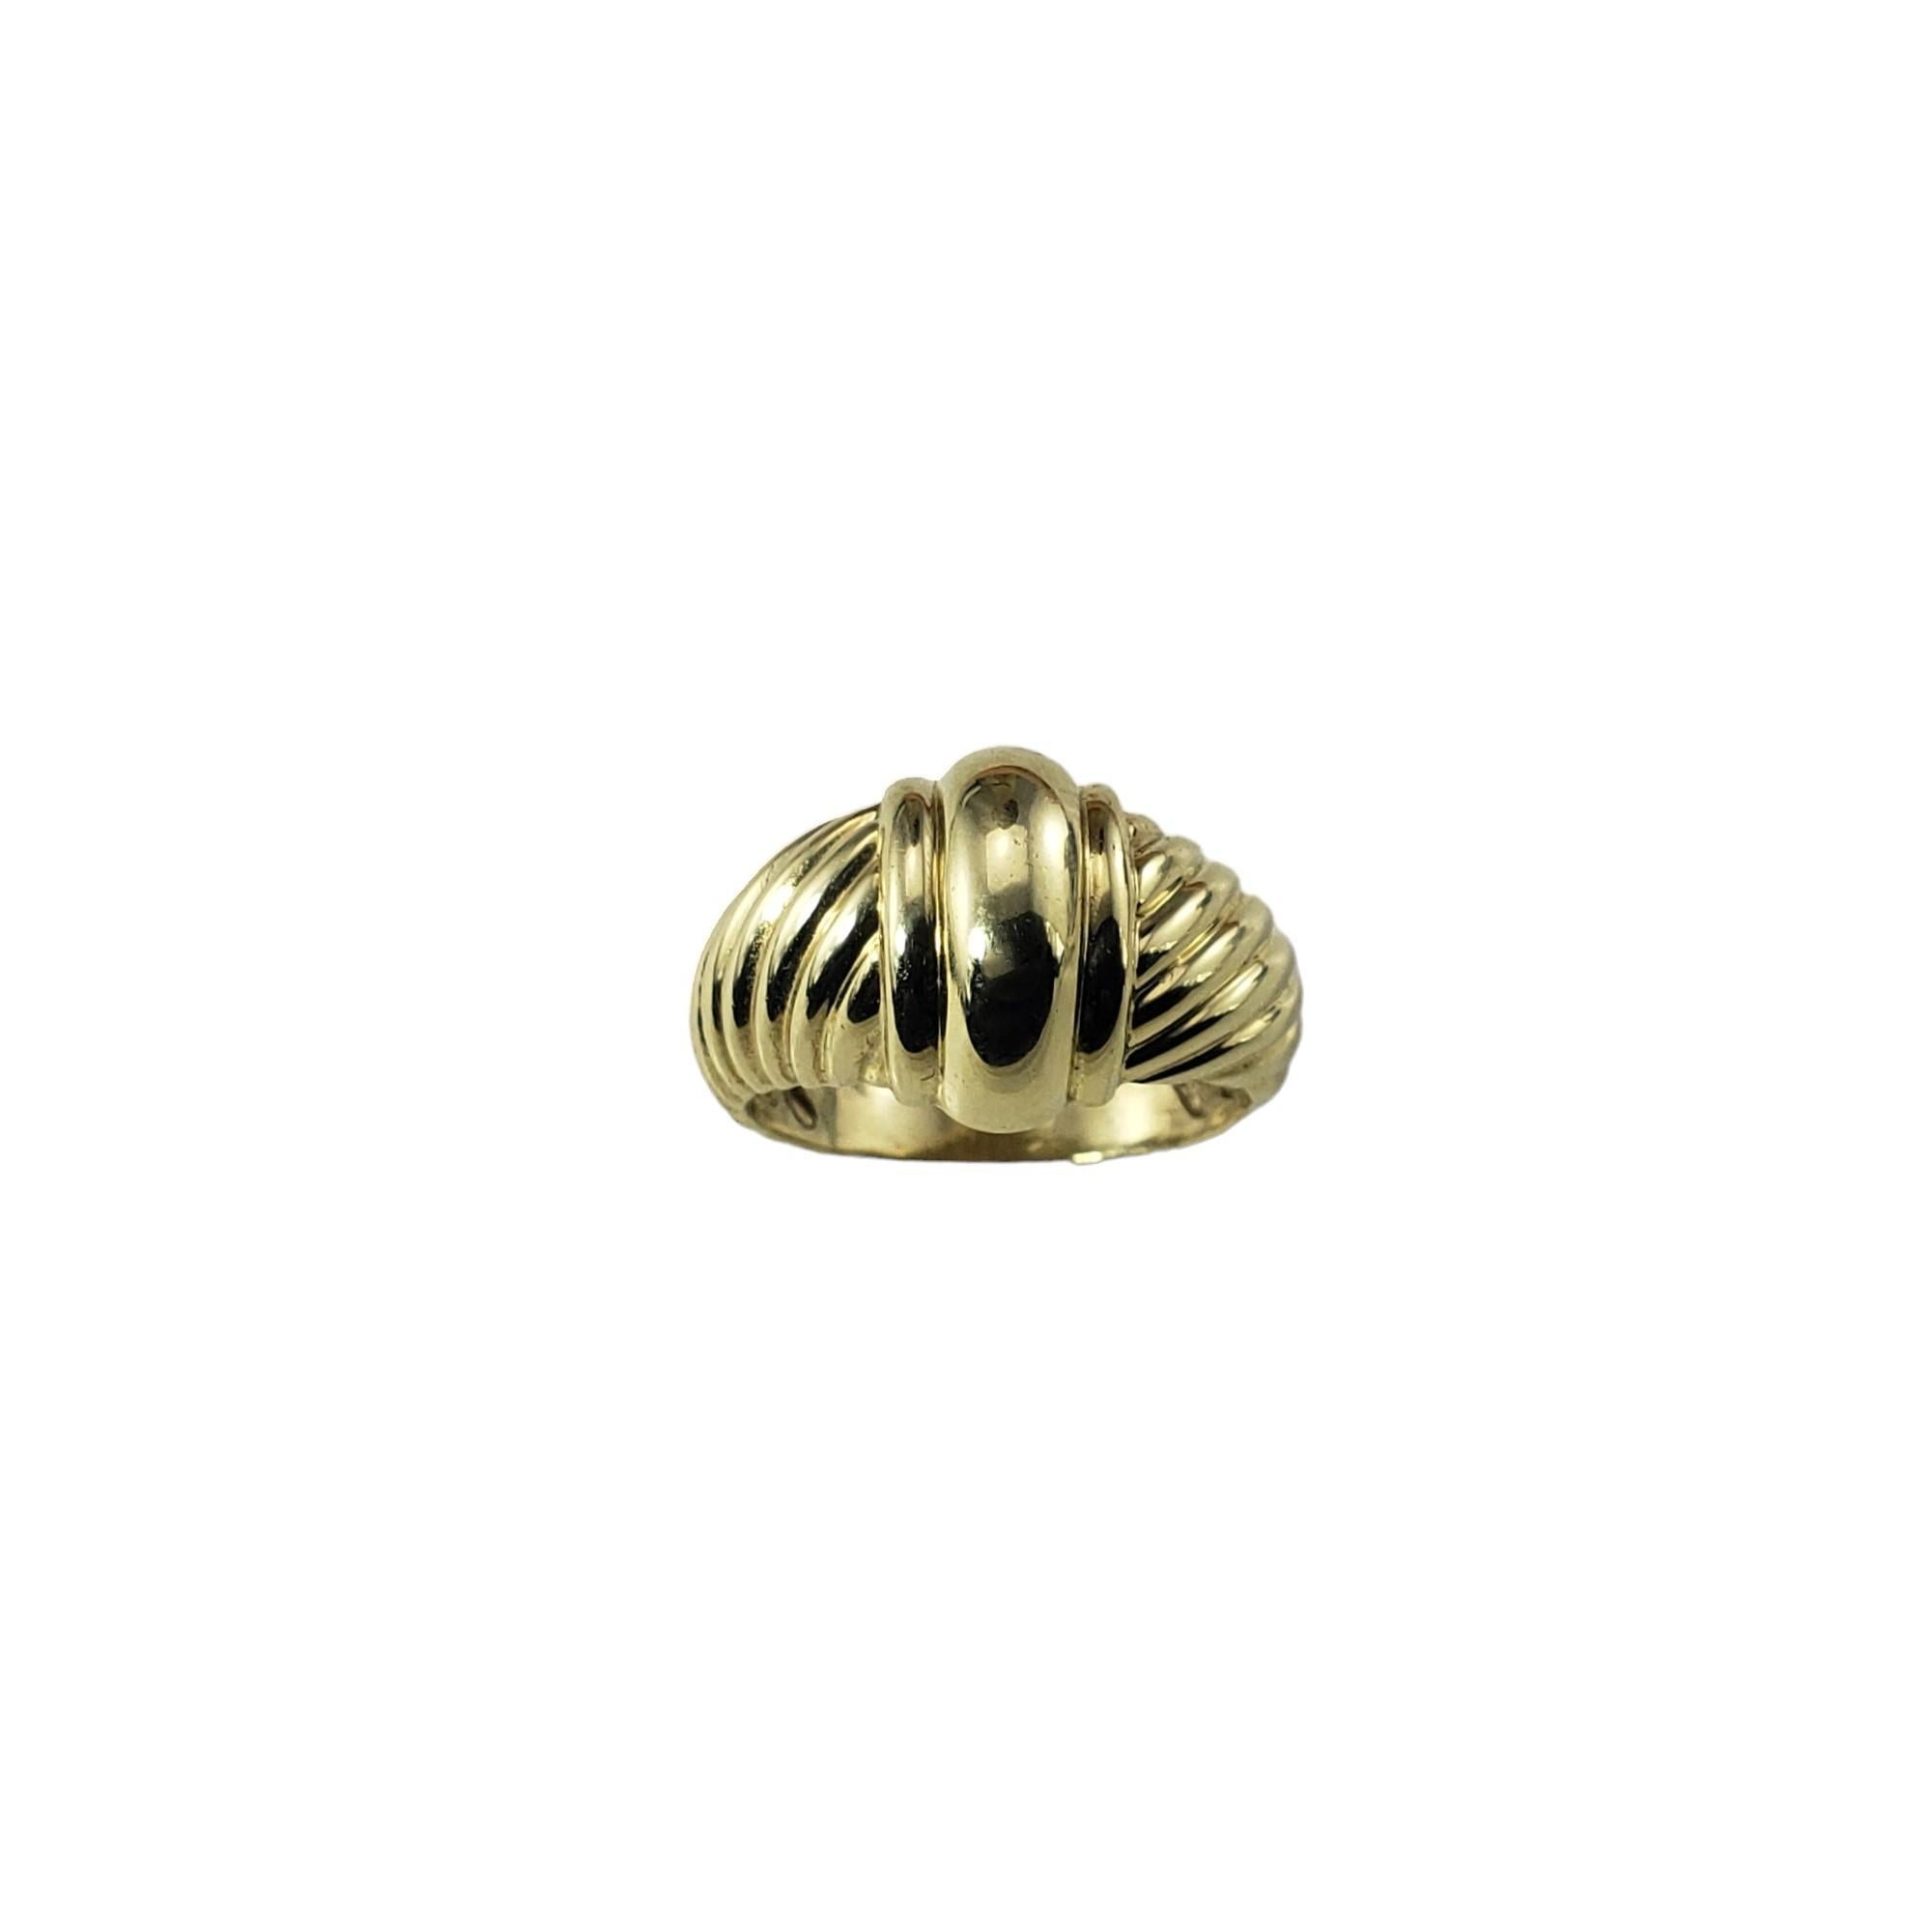 David Yurman 14 Karat Yellow Gold Metro Ring Size 8.75-

The Metro ring by David Yurman is crafted in meticulously detailed 14K yellow gold.  Width:  14 mm.  Shank: 3.6 mm.

Ring Size: 8.75

Stamped: YURMAN 14K

Weight:  8.1 gr./  5.2 dwt.

Very